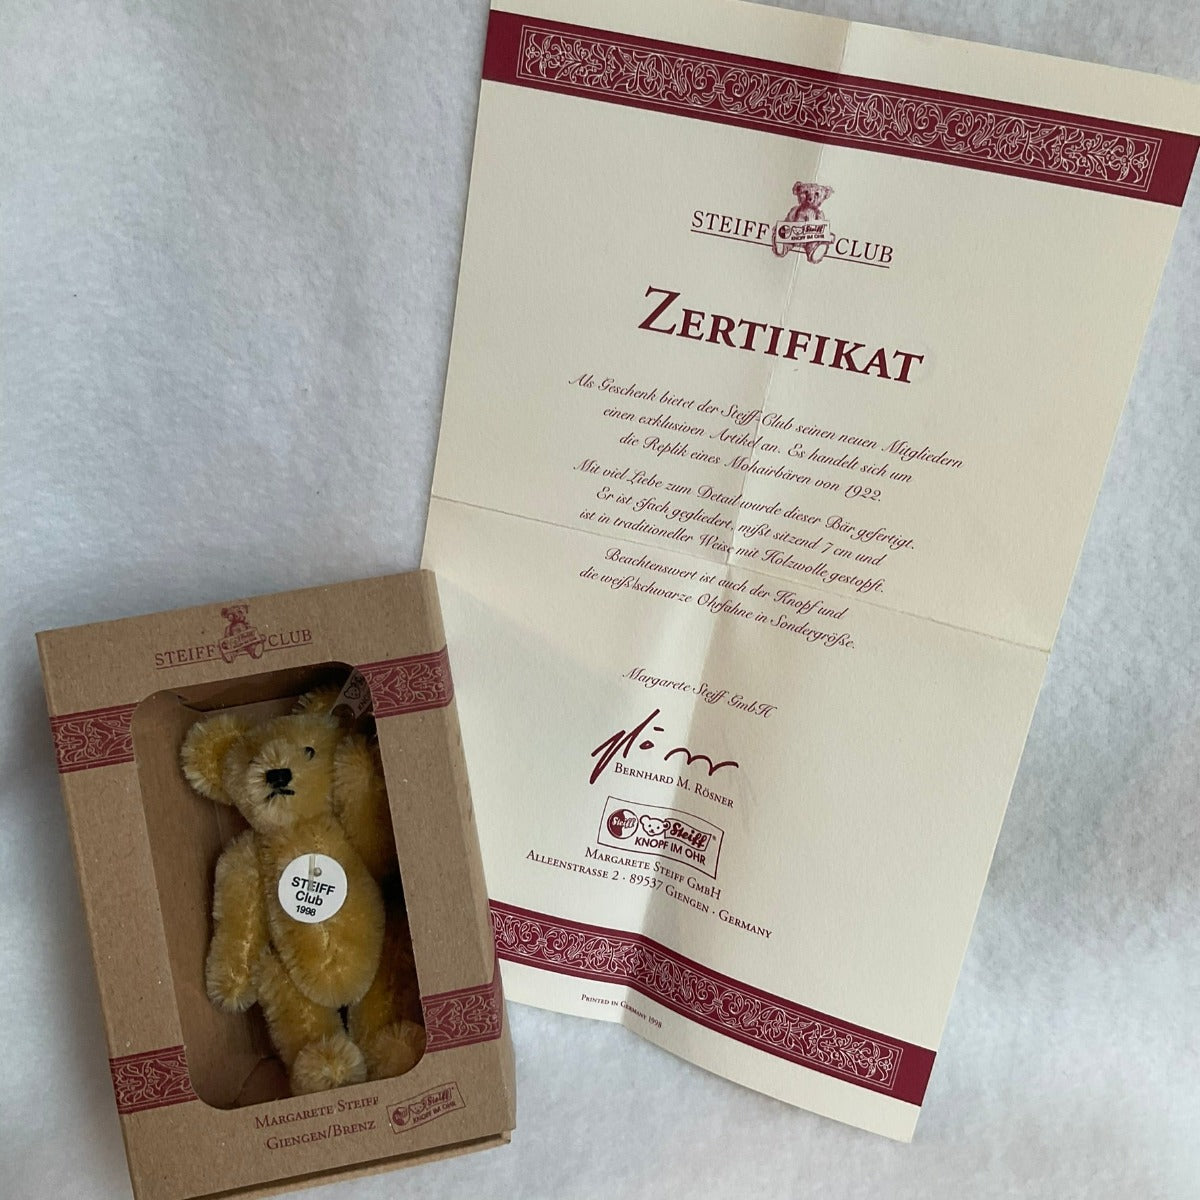 1998 Steiff Club Gift Membership Kit - Certificate in German